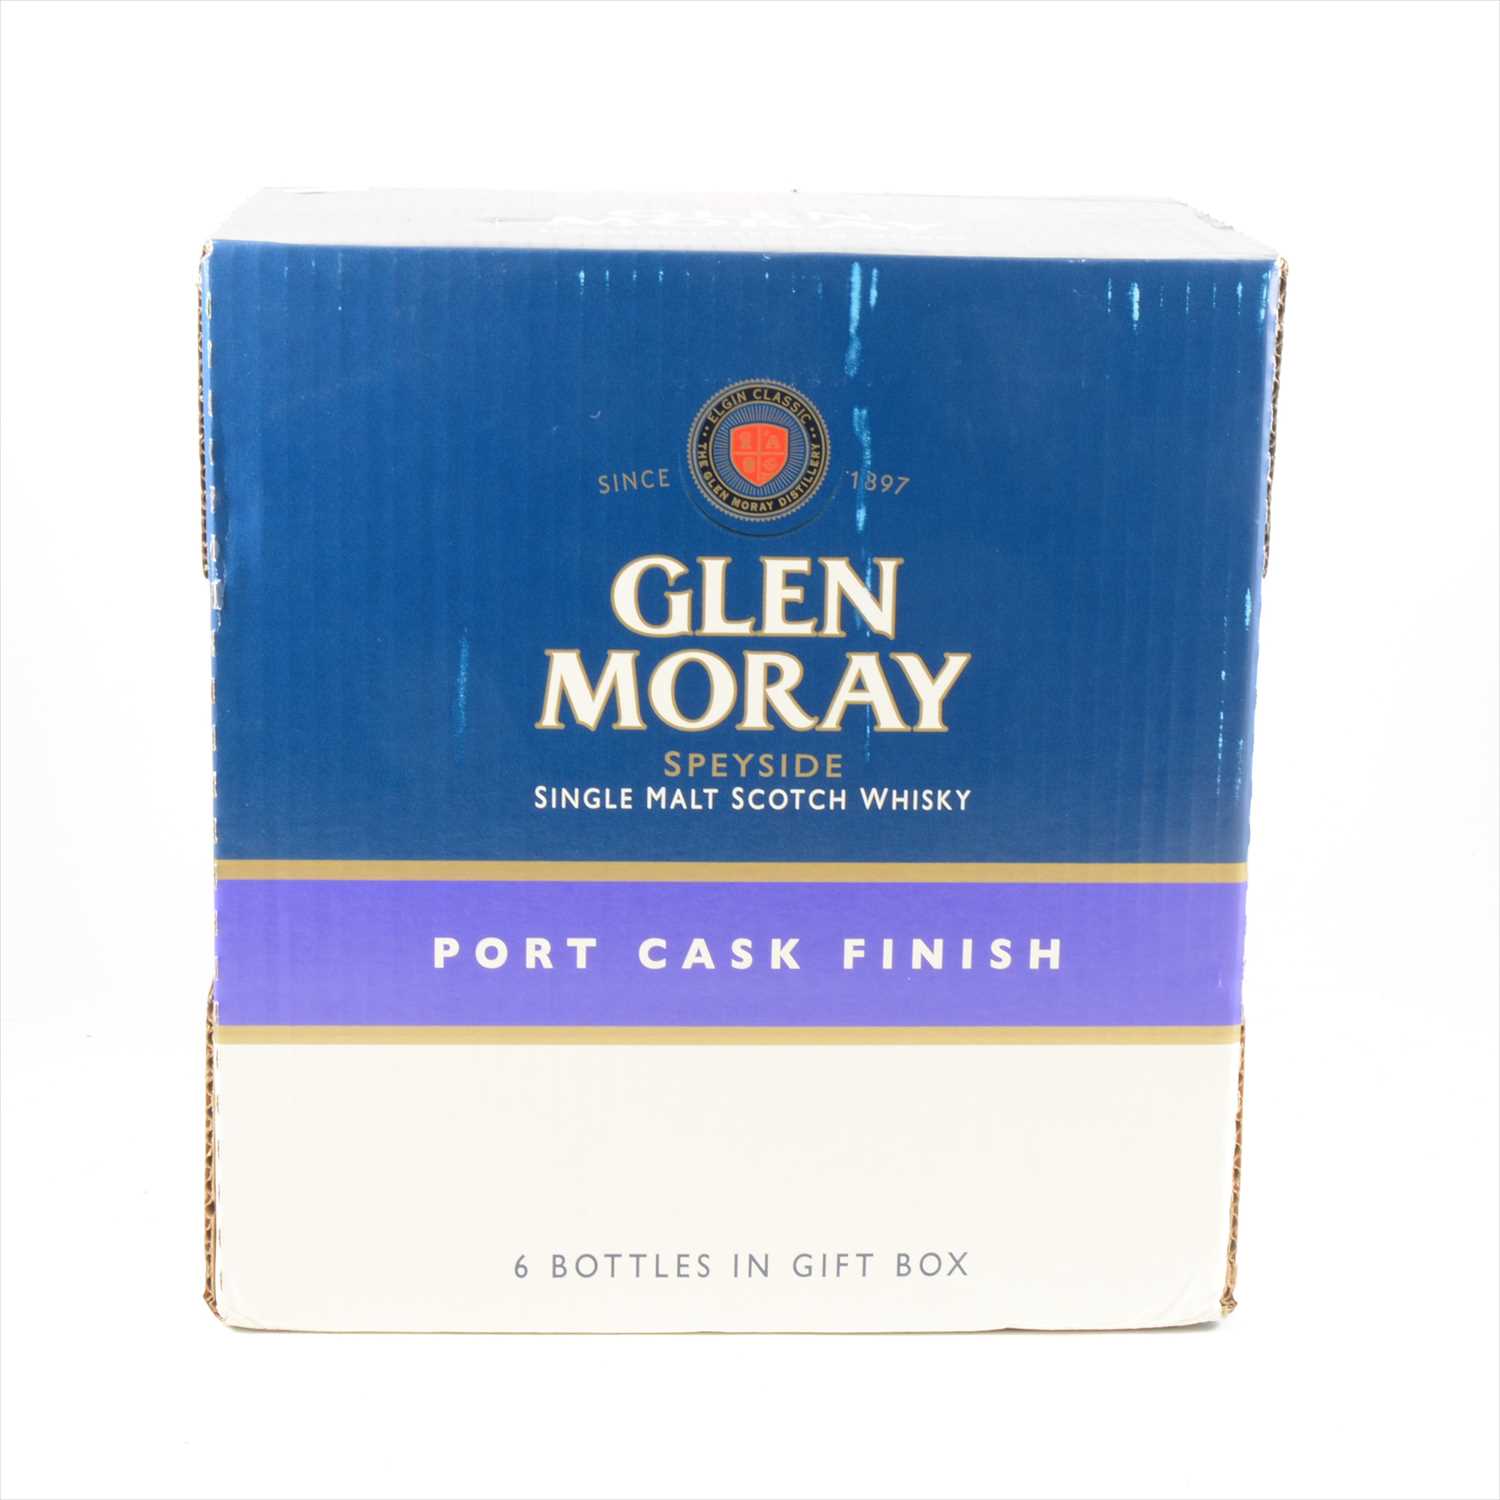 Lot 598 - GLEN MORAY - Classic, Port cask finish, Speyside single malt Scotch whisky, 6 bottles.